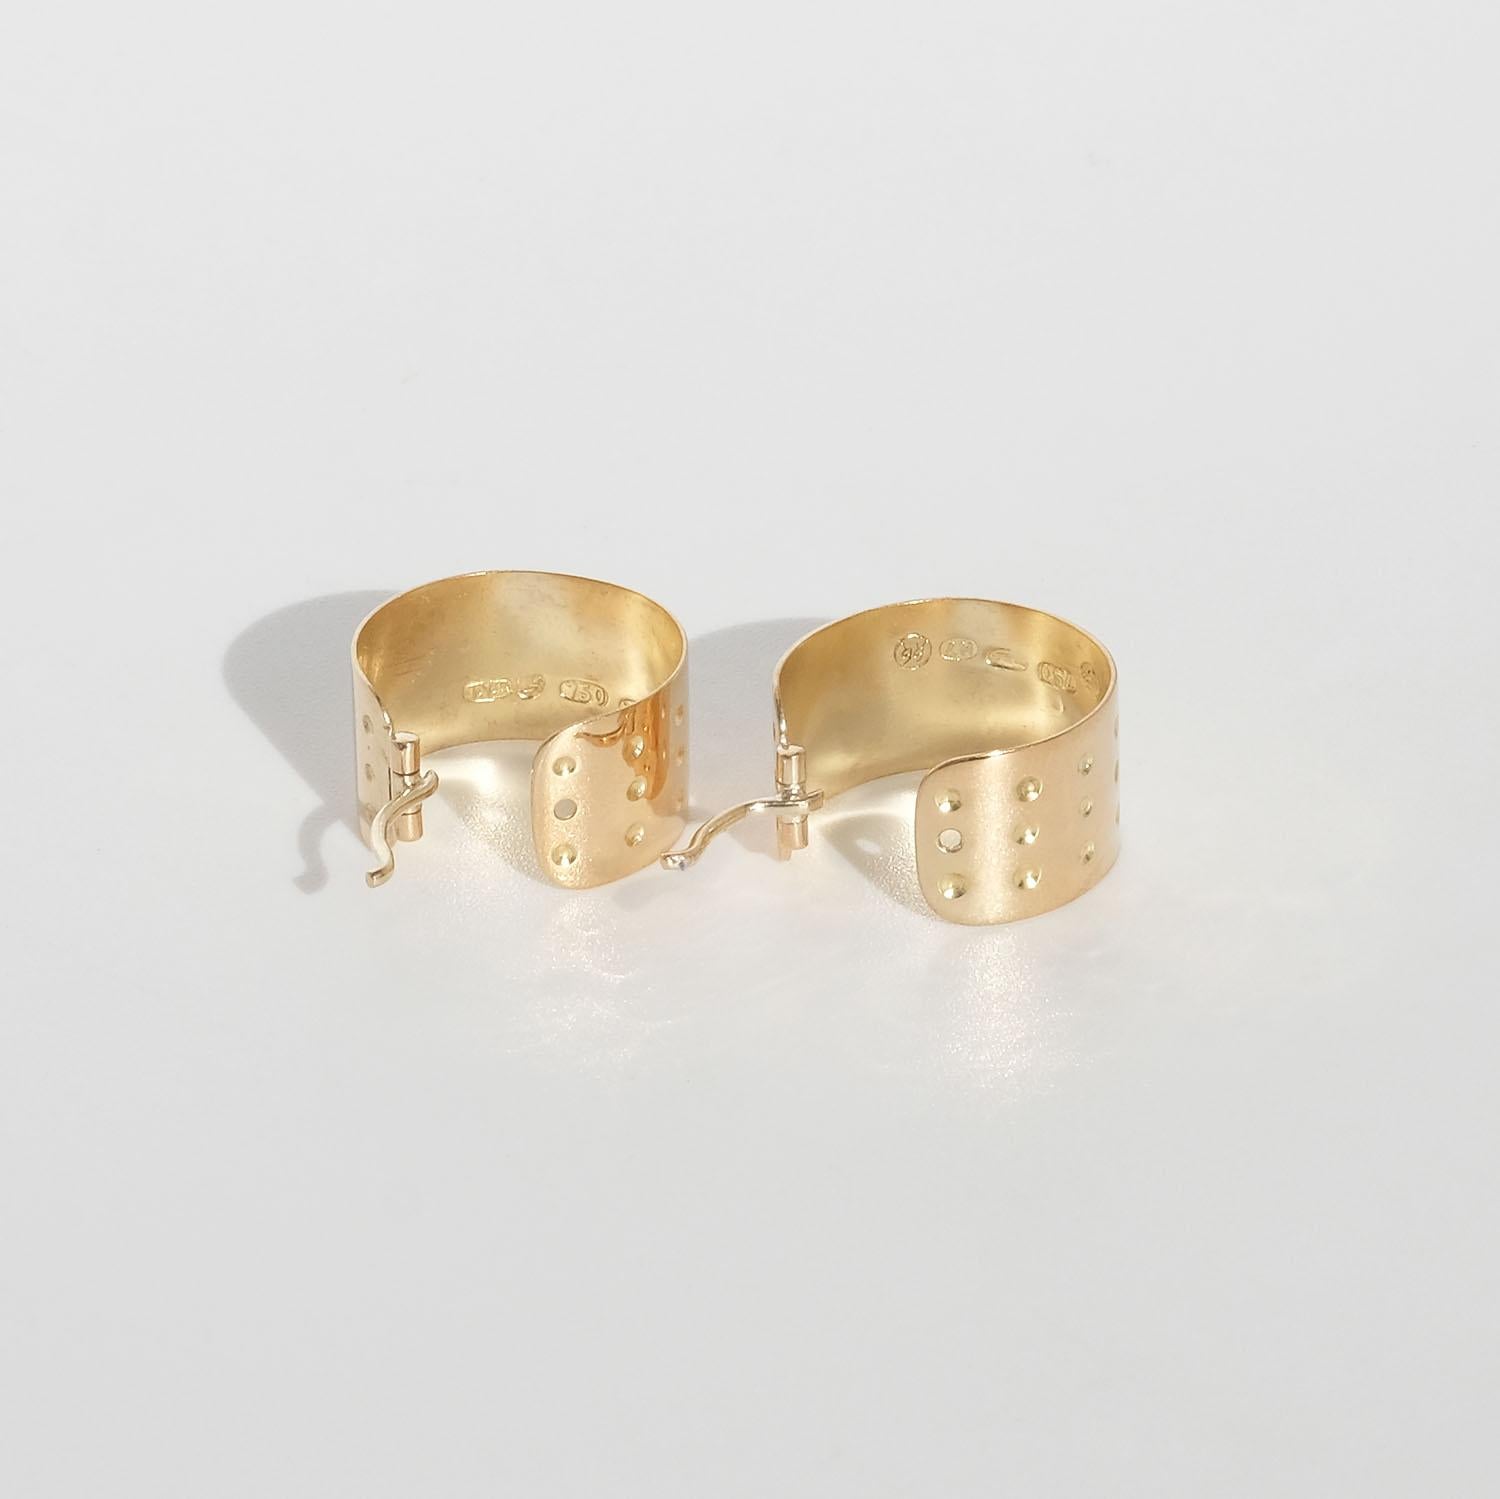 Vintage 18k Gold Hoop Earrings by Kalevala Koru Oy Made Year 1961 1